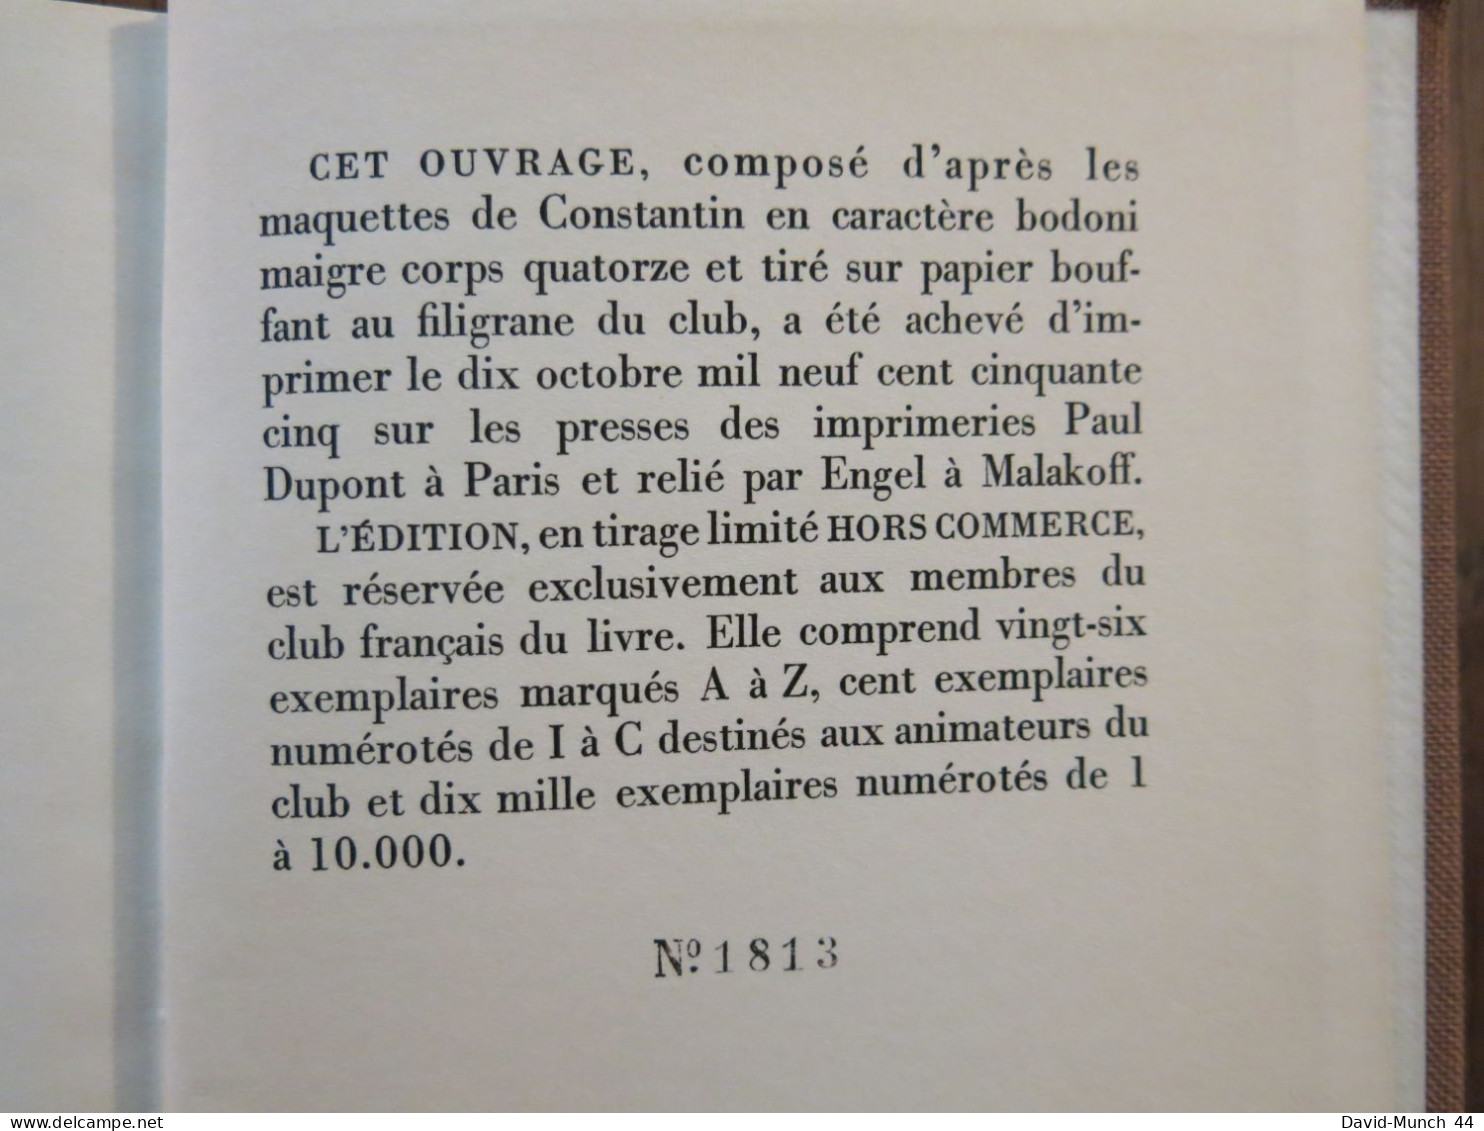 Le coup de lune de Georges Simenon. Paris. 1955, exemplaire numéroté